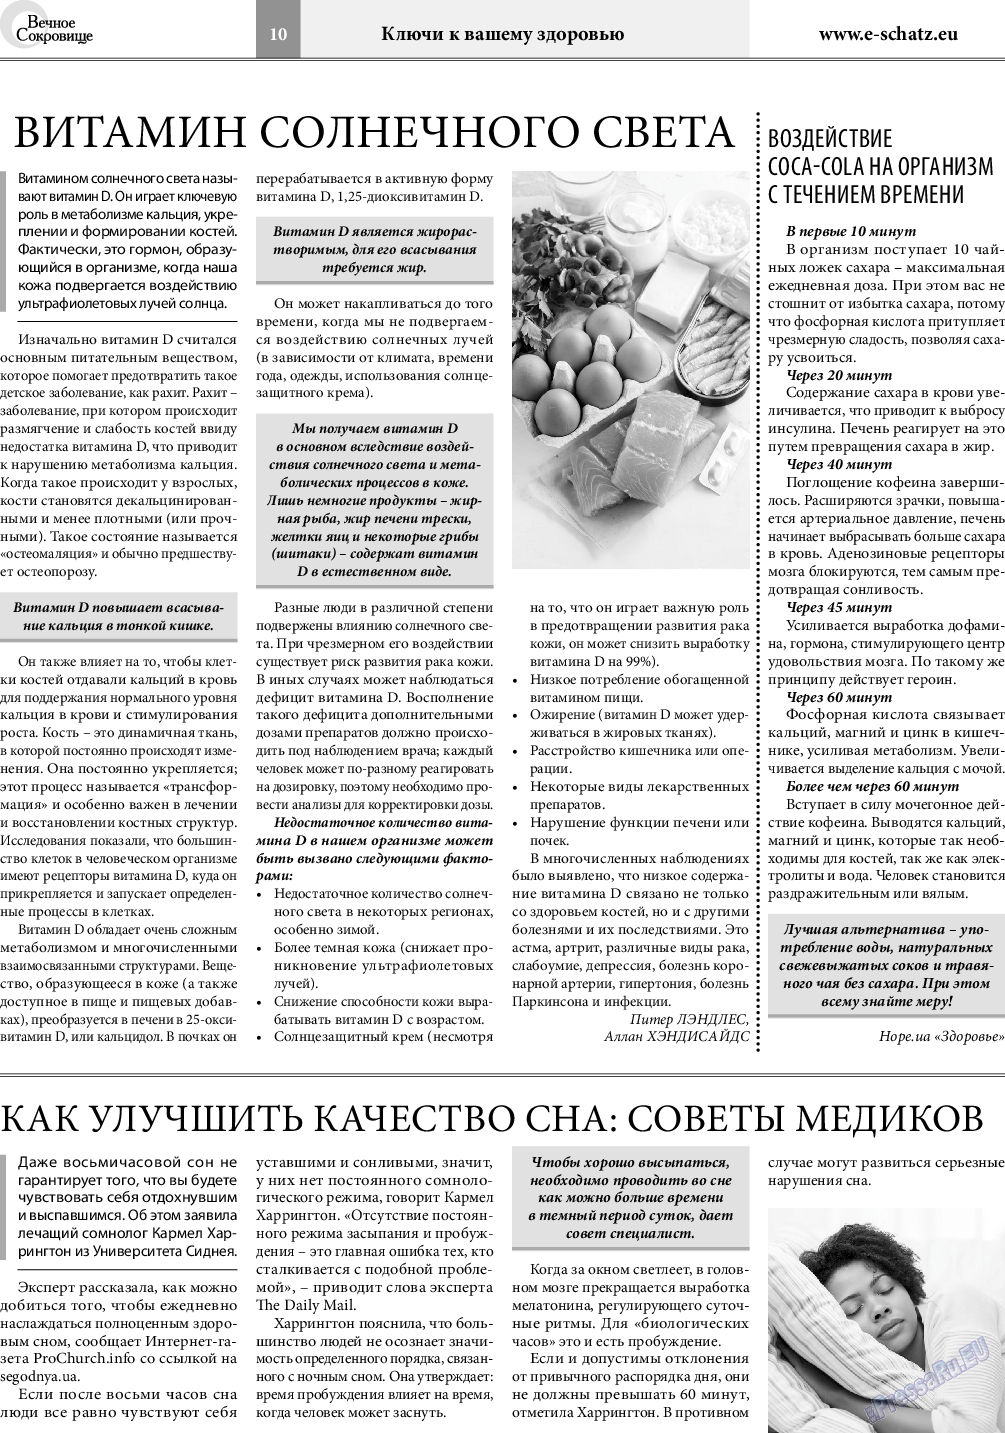 Вечное сокровище, газета. 2019 №1 стр.10